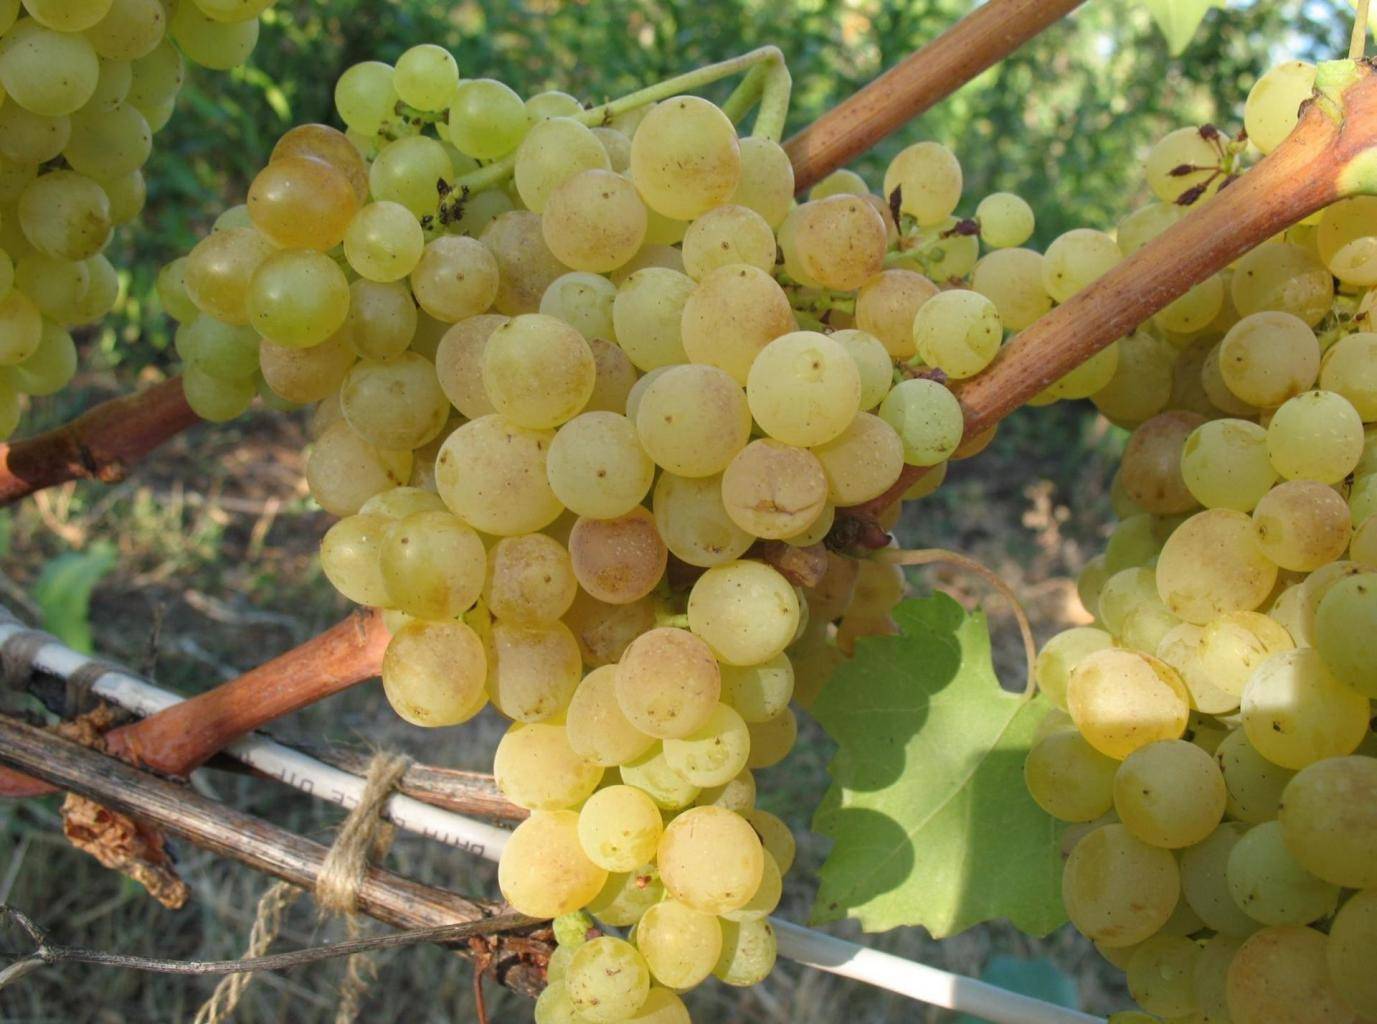 Виноград "кишмиш лучистый": фото и описание сорта, характеристики и вкусовые качества